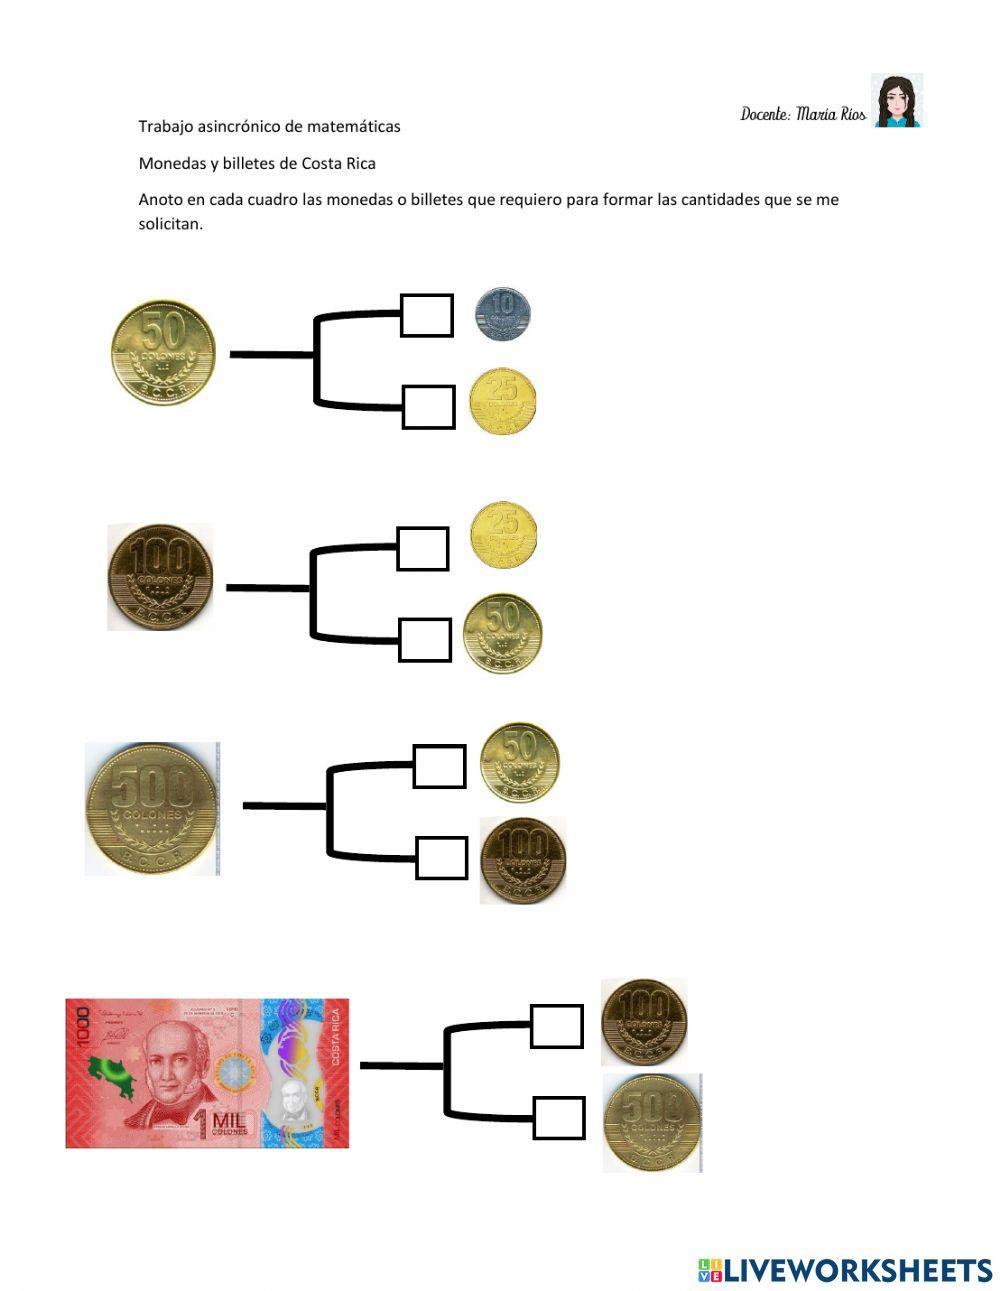 Monedas y billetes de Costa Rica